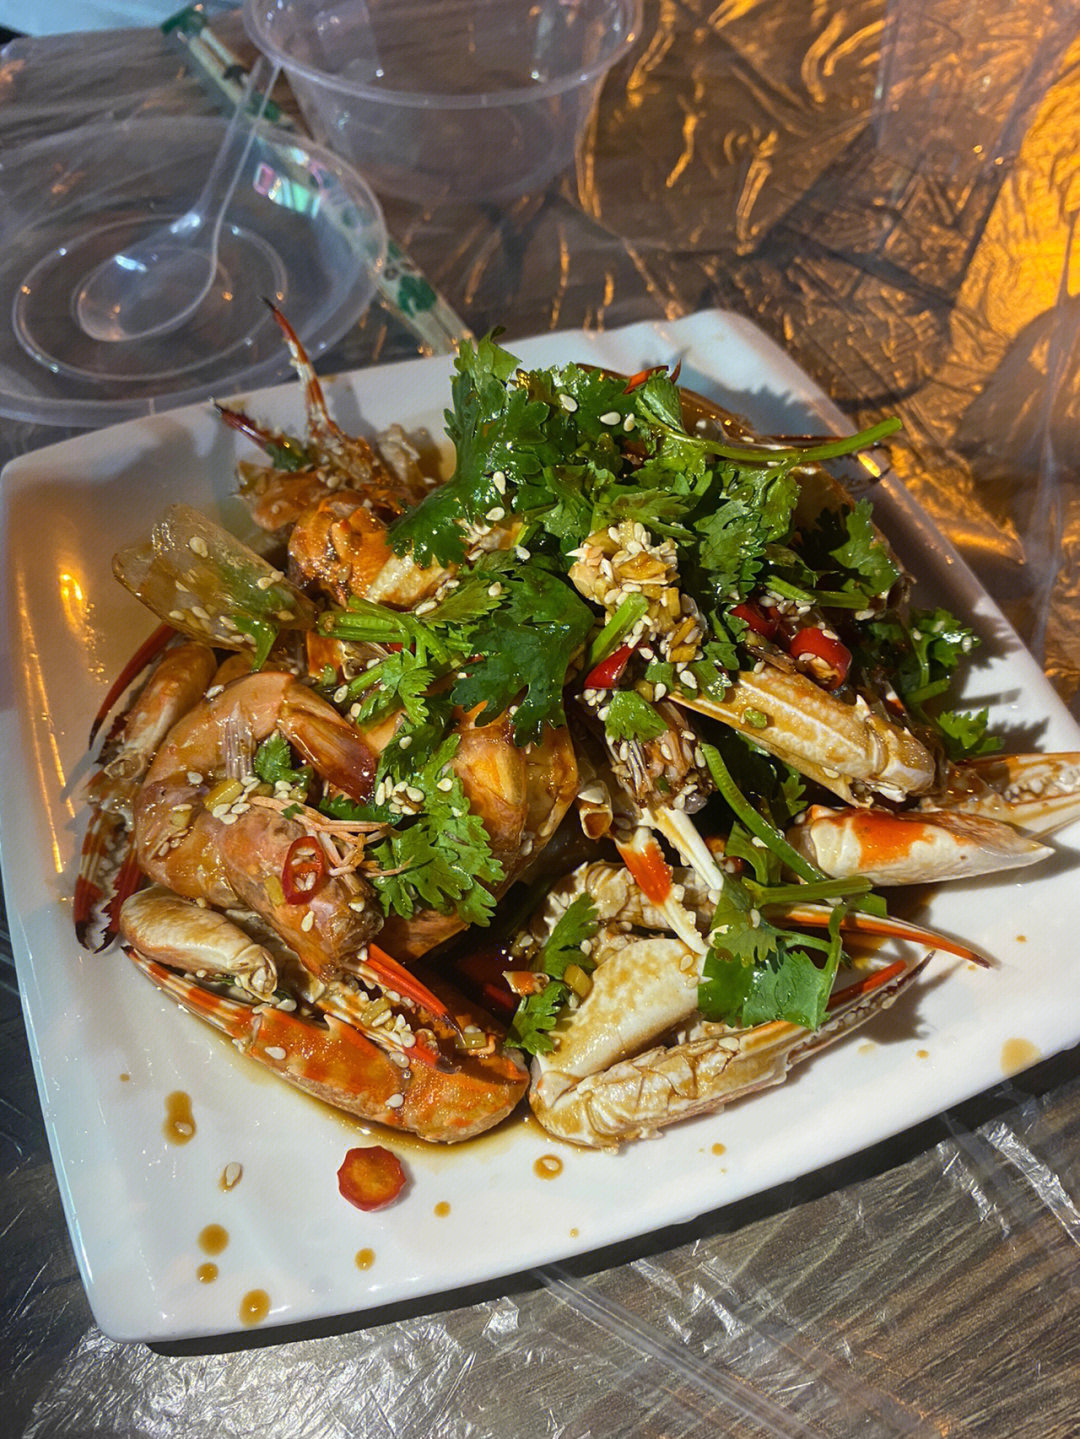 武汉炭烤「吮指捞汁蟹脚」捞汁小海鲜:俺们点的蟹钳和基围虾双拼